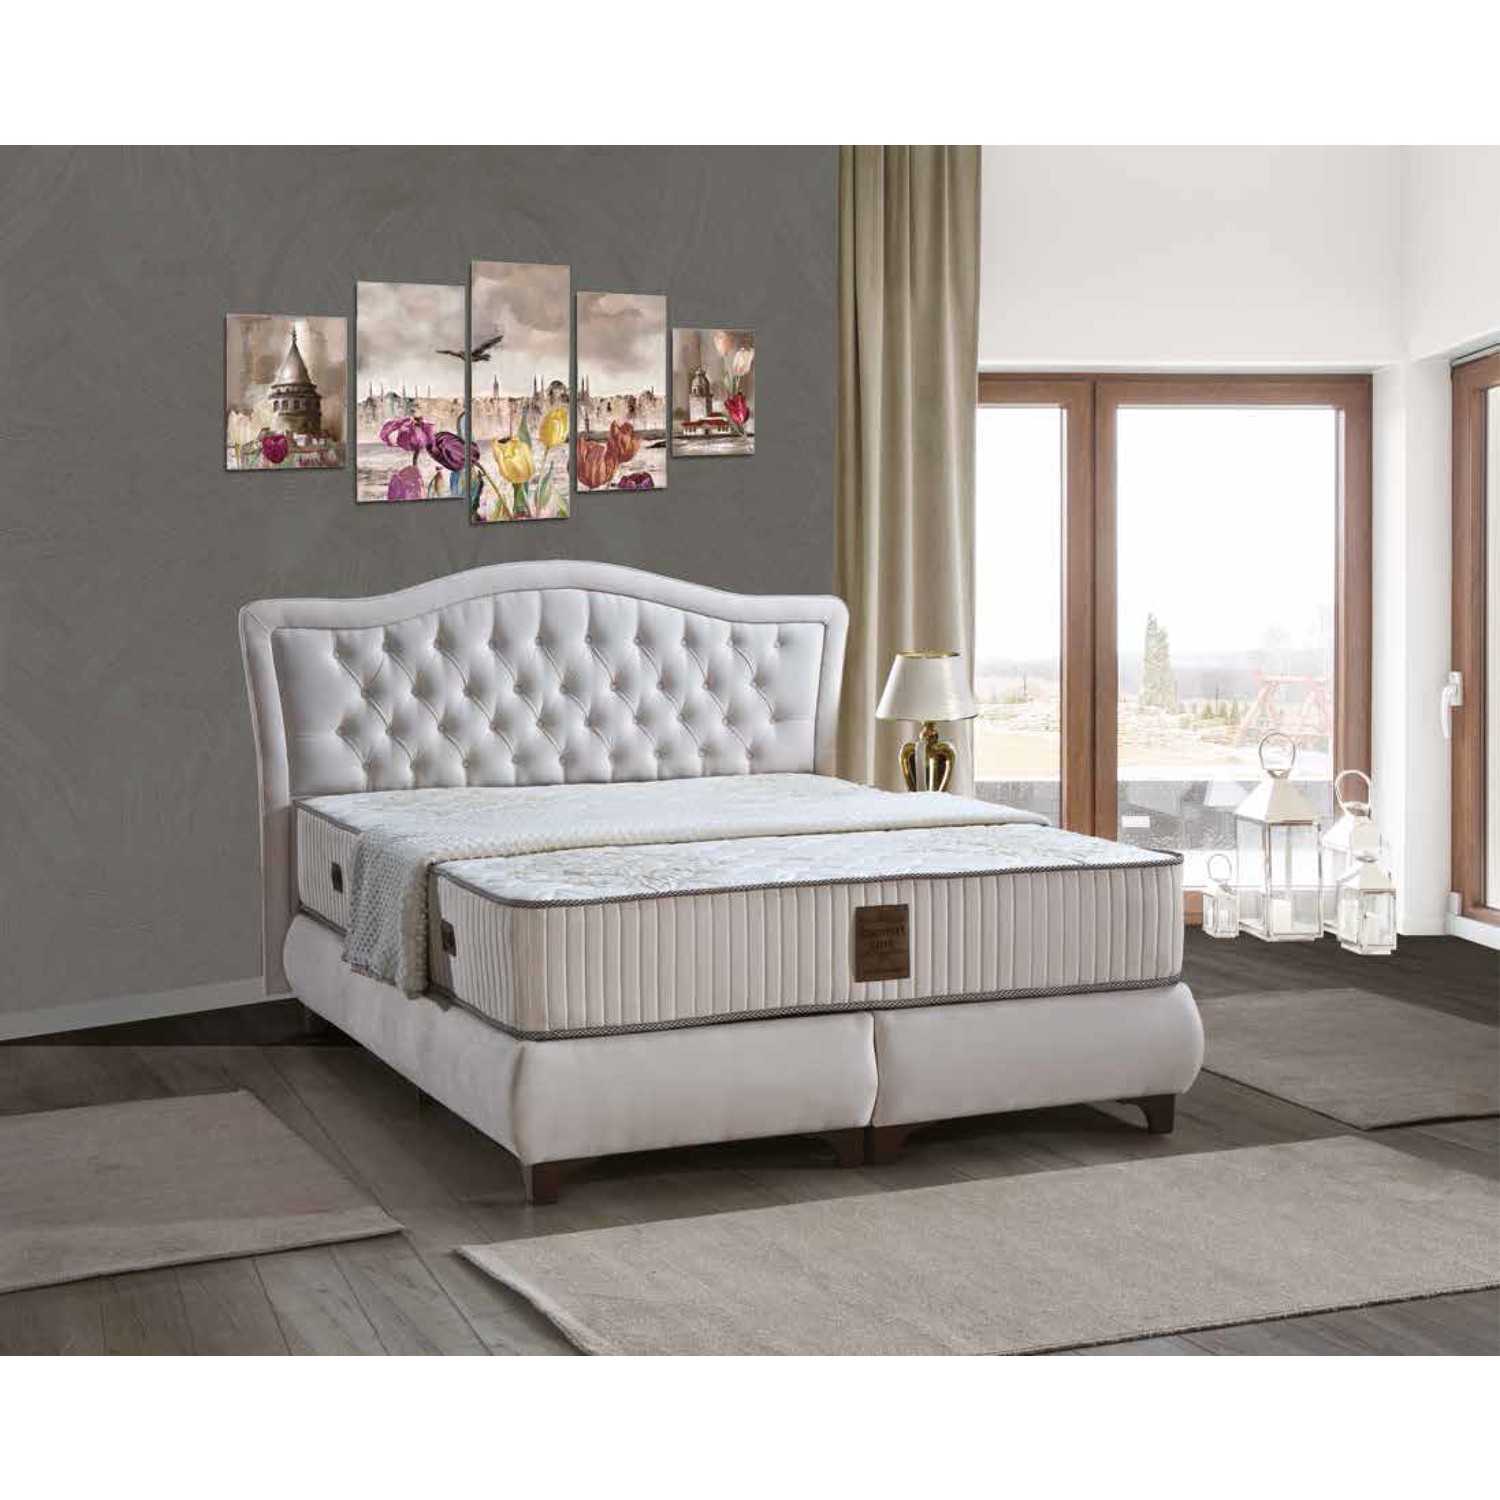 Sleep Comfort Comfort Line Yatak Baza Başlık Set 120x200 Fiyatı